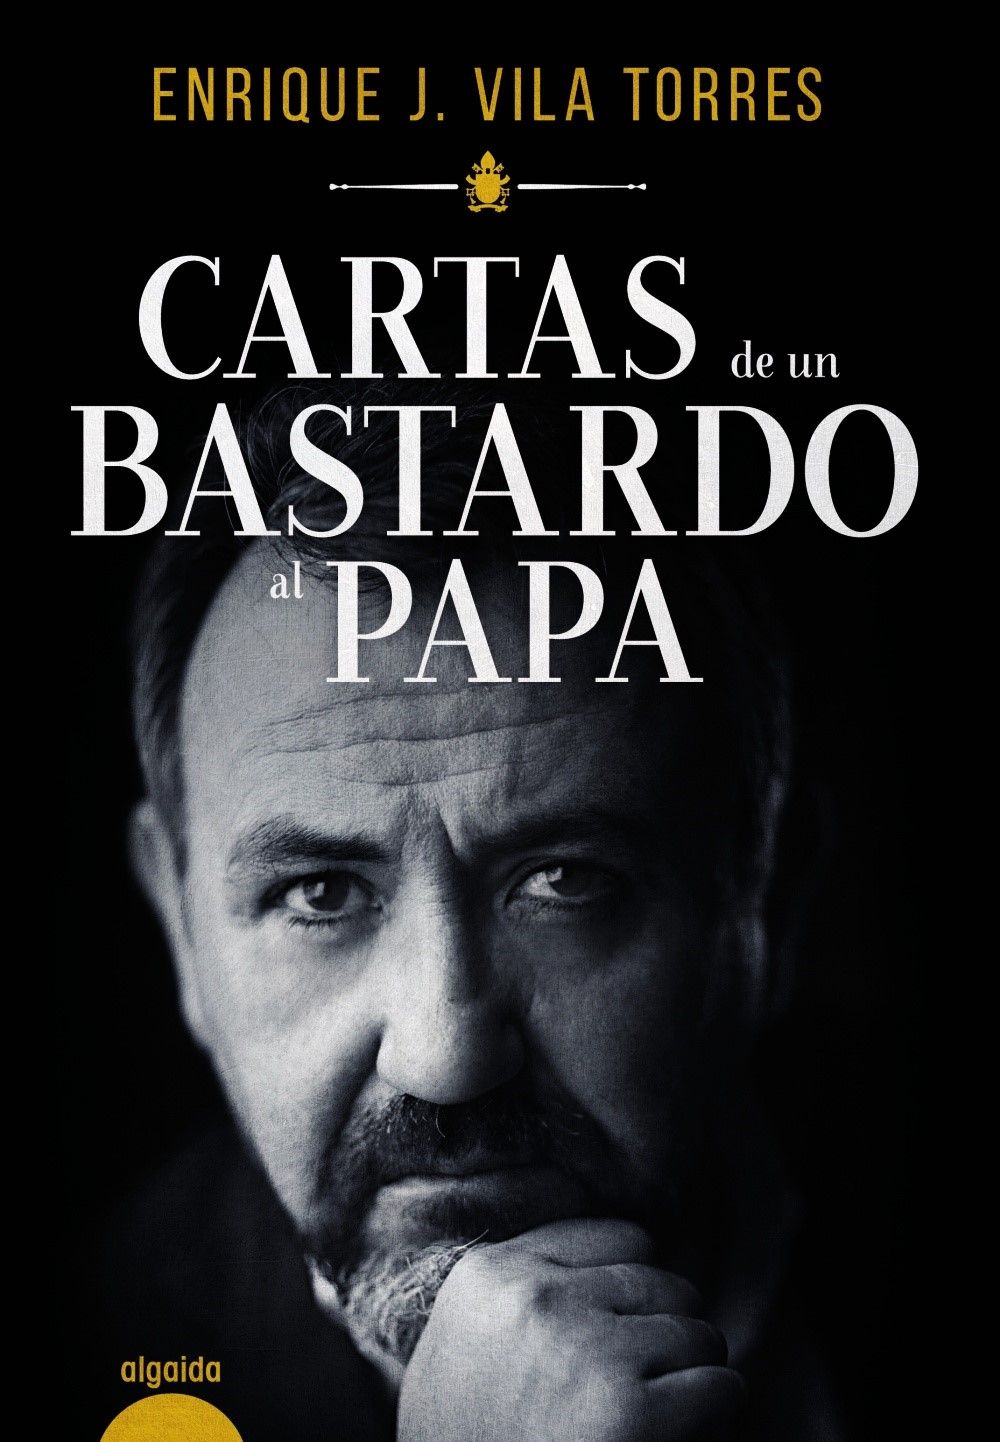 El abogado Enrique J. Vila Torres publica en castellano su libro Cartas de un bastardo al Papa